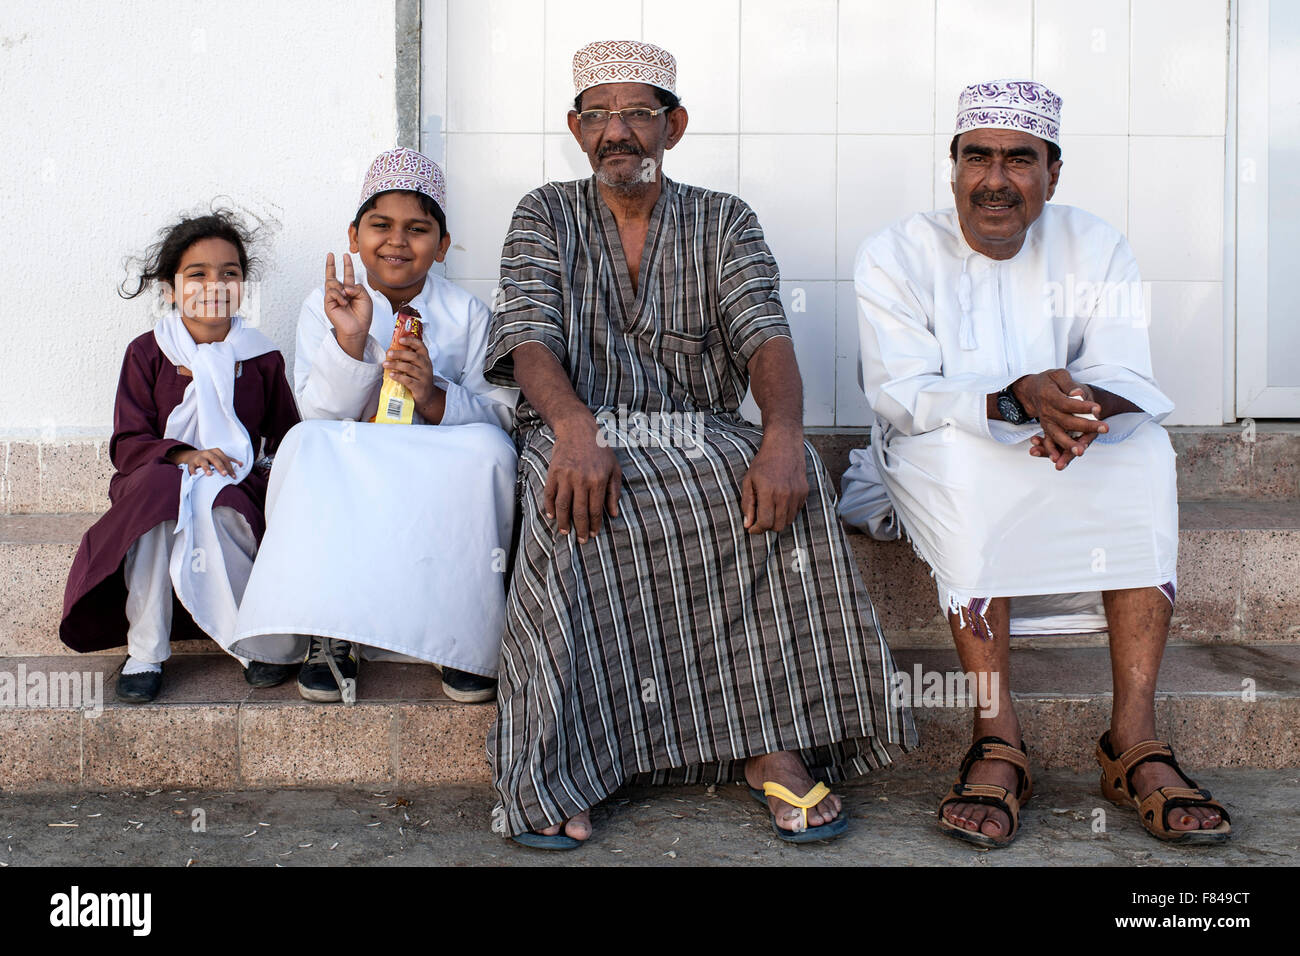 Les hommes et les enfants omanais assis dans le vieux Mascate, partie de la capitale du Sultanat d'Oman. Banque D'Images